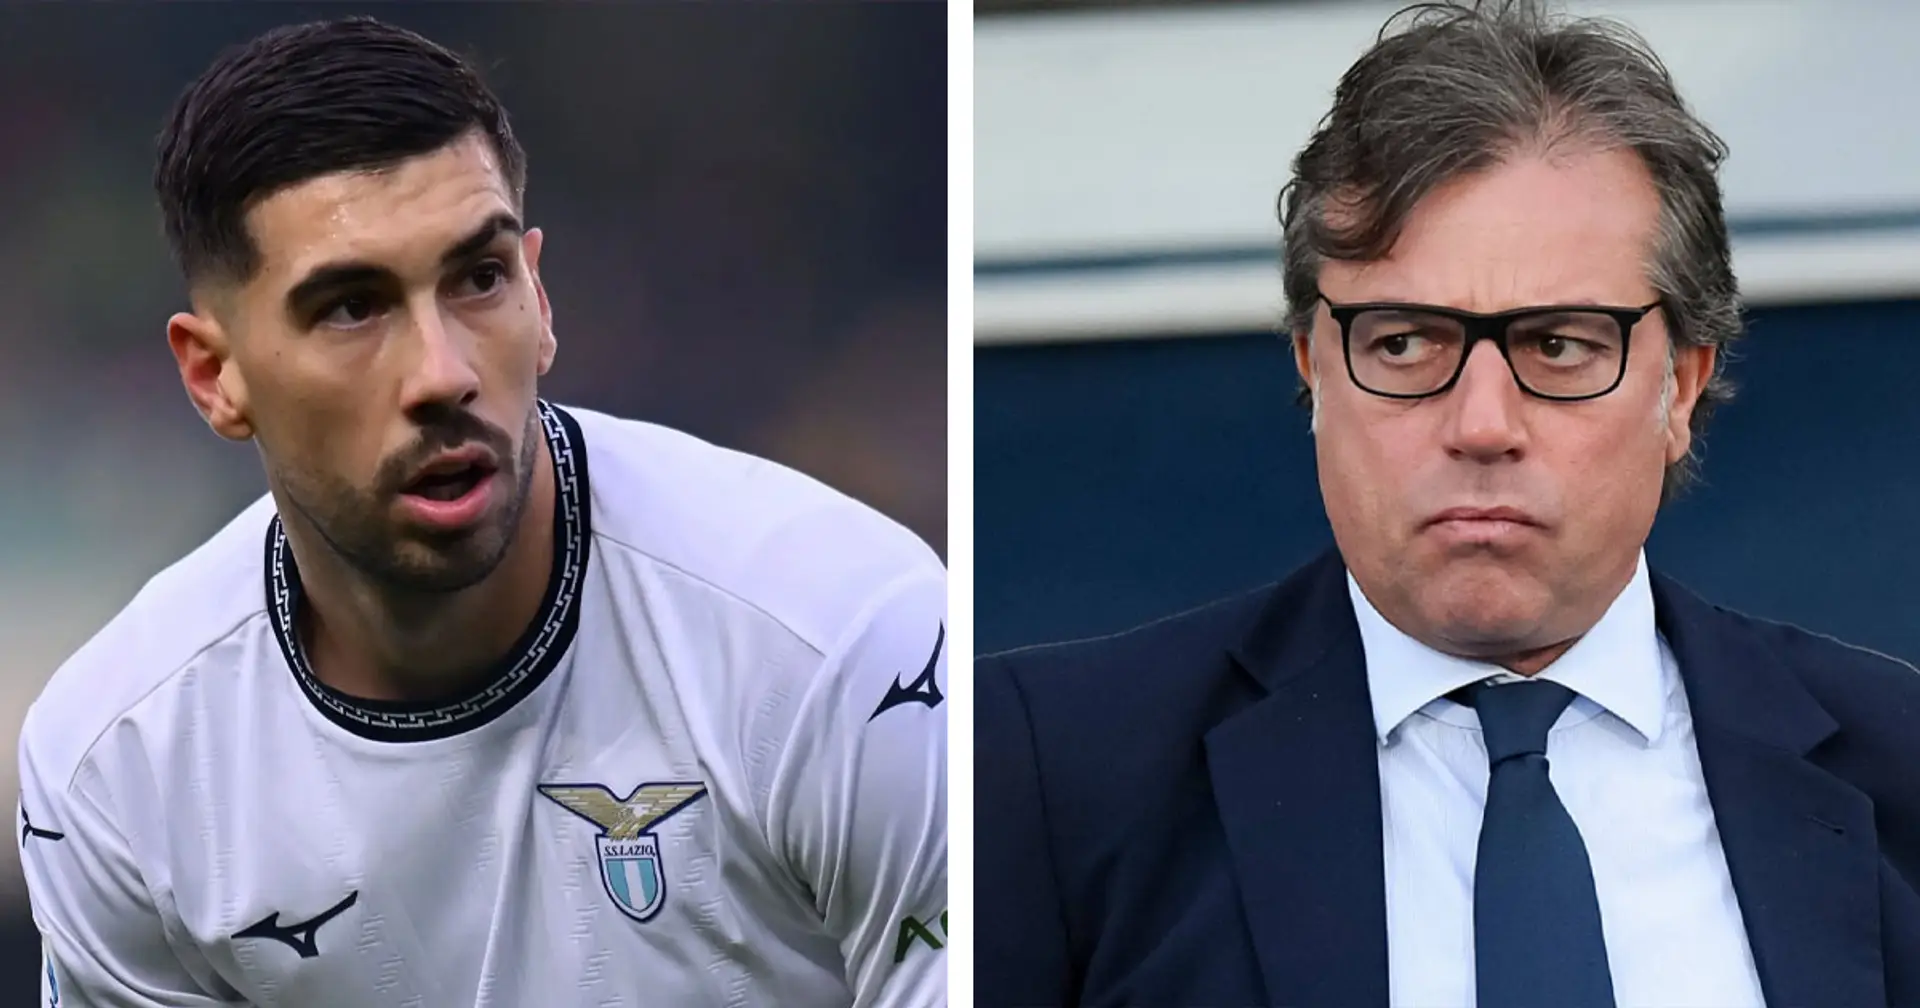 La Juventus prepara l'assalto a Zaccagni: dai contatti con l'agente alla richiesta della Lazio, i dettagli